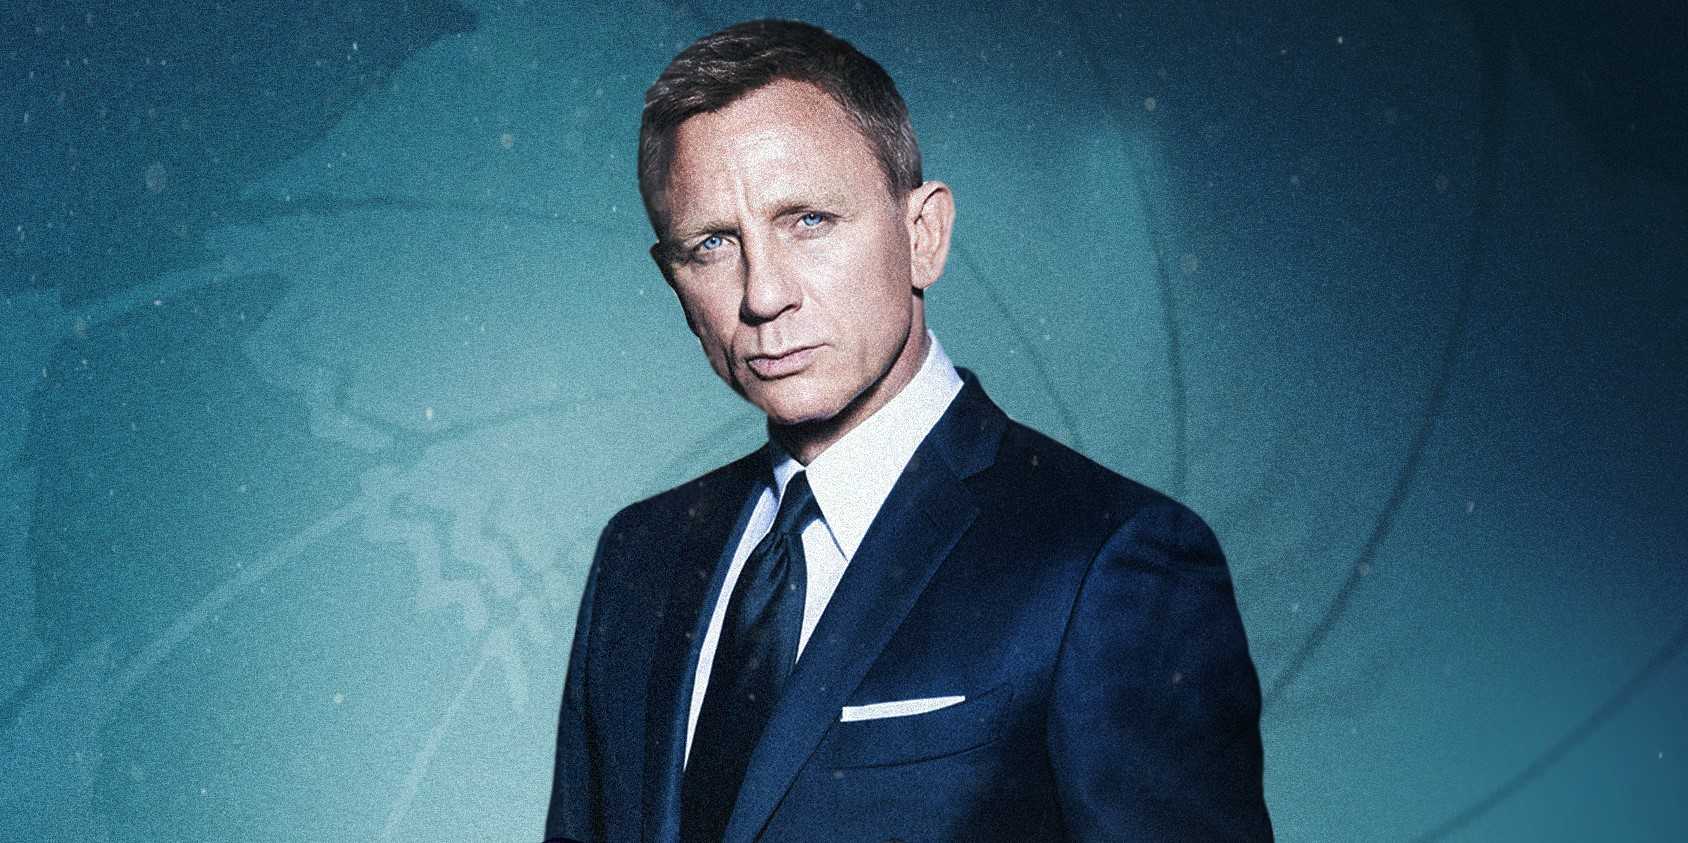 Часы джеймса бонда: какие часы носил агент 007 в своих фильмах?